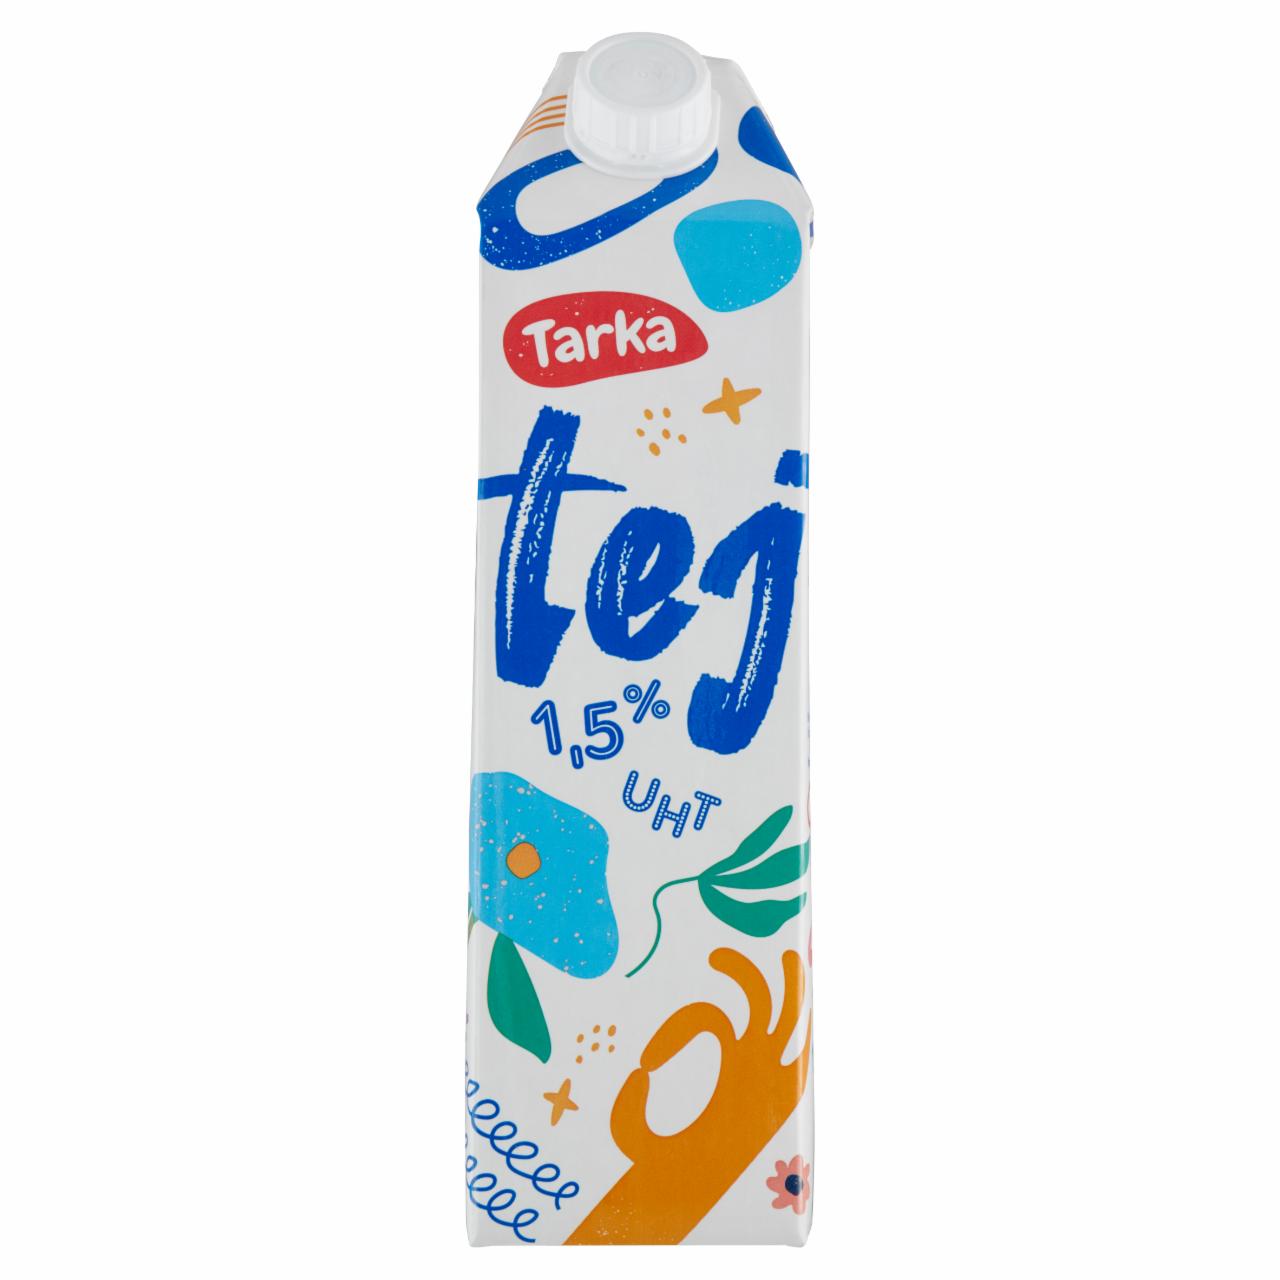 Képek - Tarka UHT zsírszegény tej 1,5% 1 l